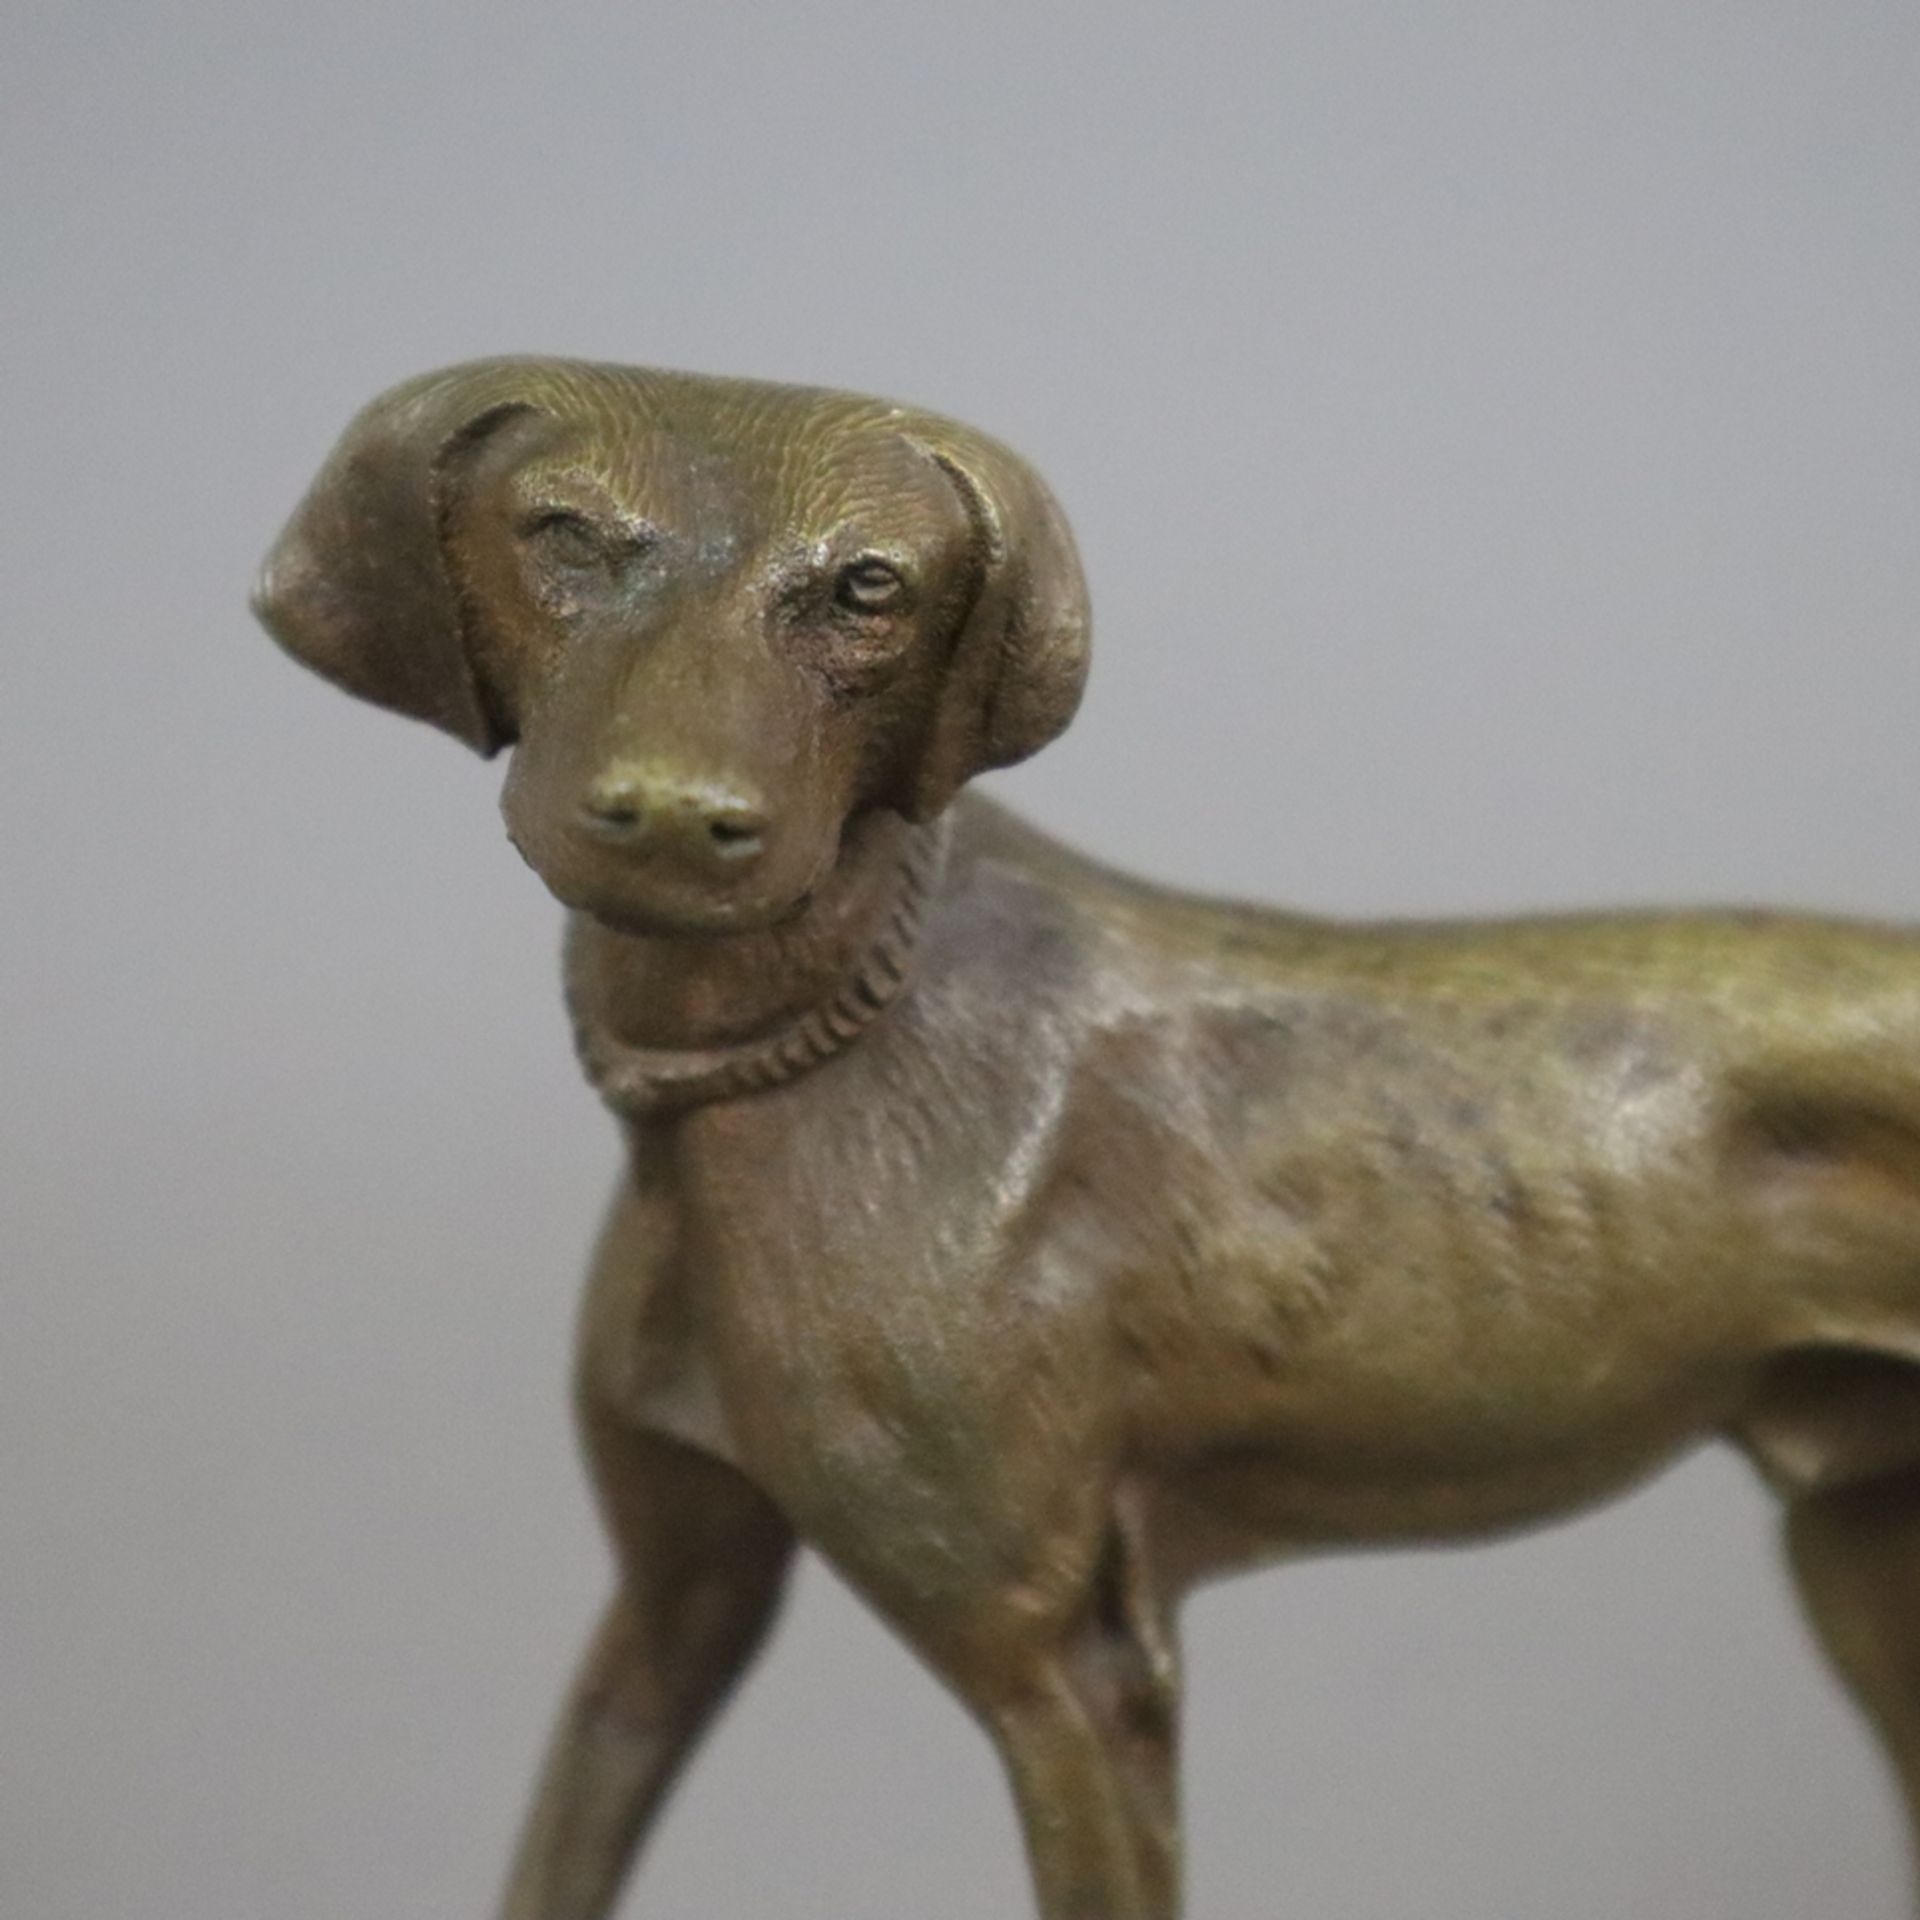 Tierskulptur "Jagdhund" - Bronze, braun patiniert, naturalistische Darstellung in bewegter Pose, na - Bild 3 aus 6